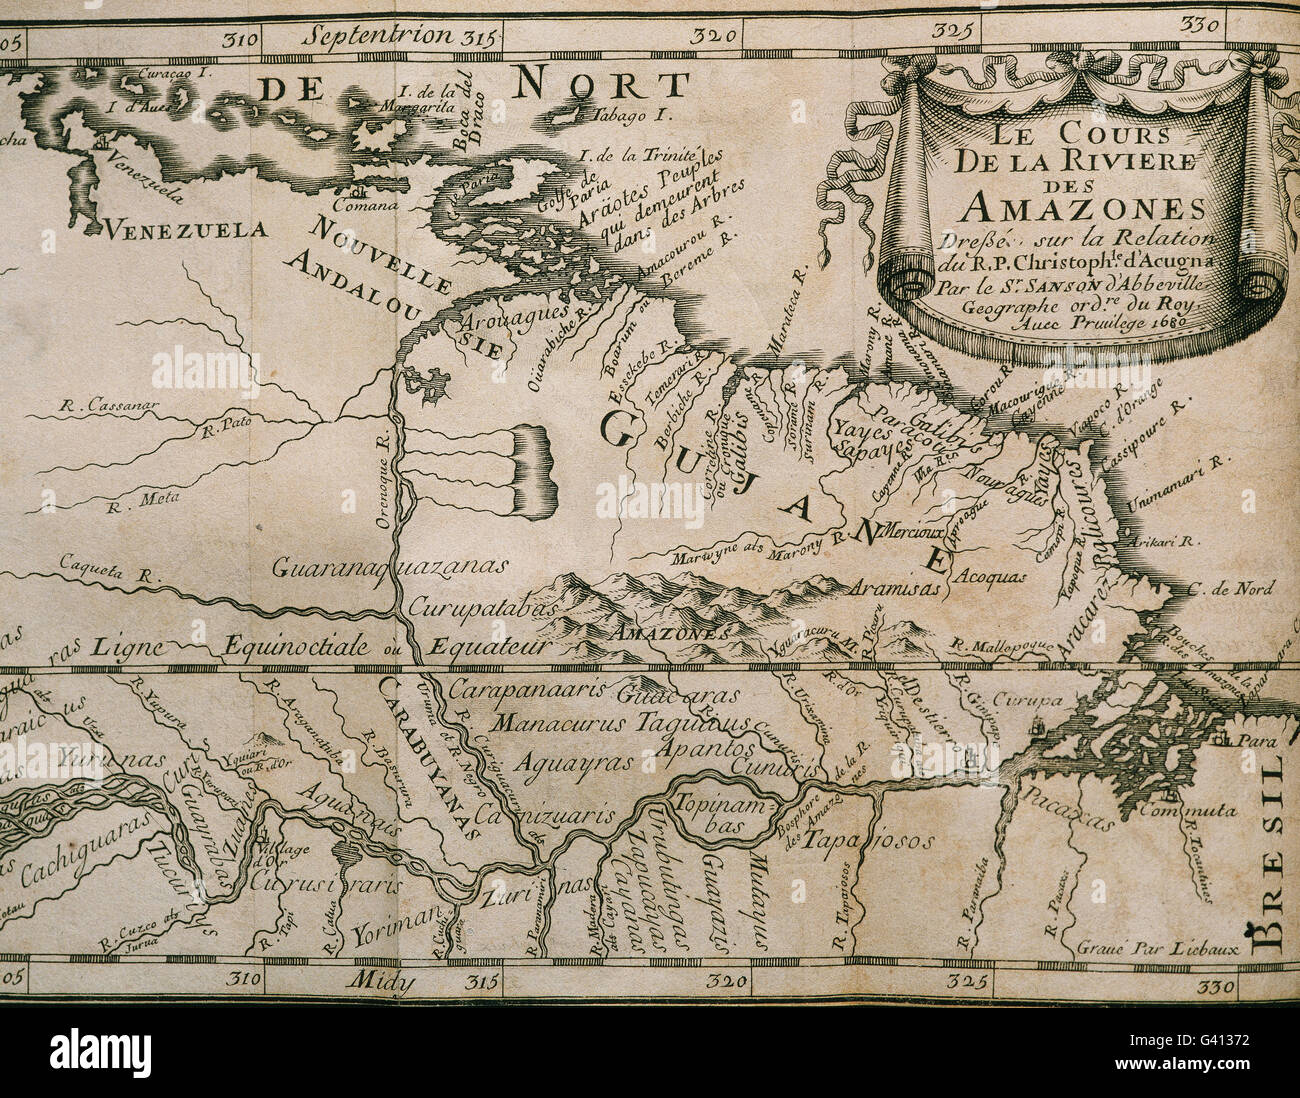 Carte de la région amazonienne de la Guyane. Il appartient à l'œuvre 'Rapport de la Riviere des Amazones", Paris, 1680. Écrit par Cristobal de Acuna (1597-1676), missionnaire jésuite espagnol. La gravure. Banque D'Images